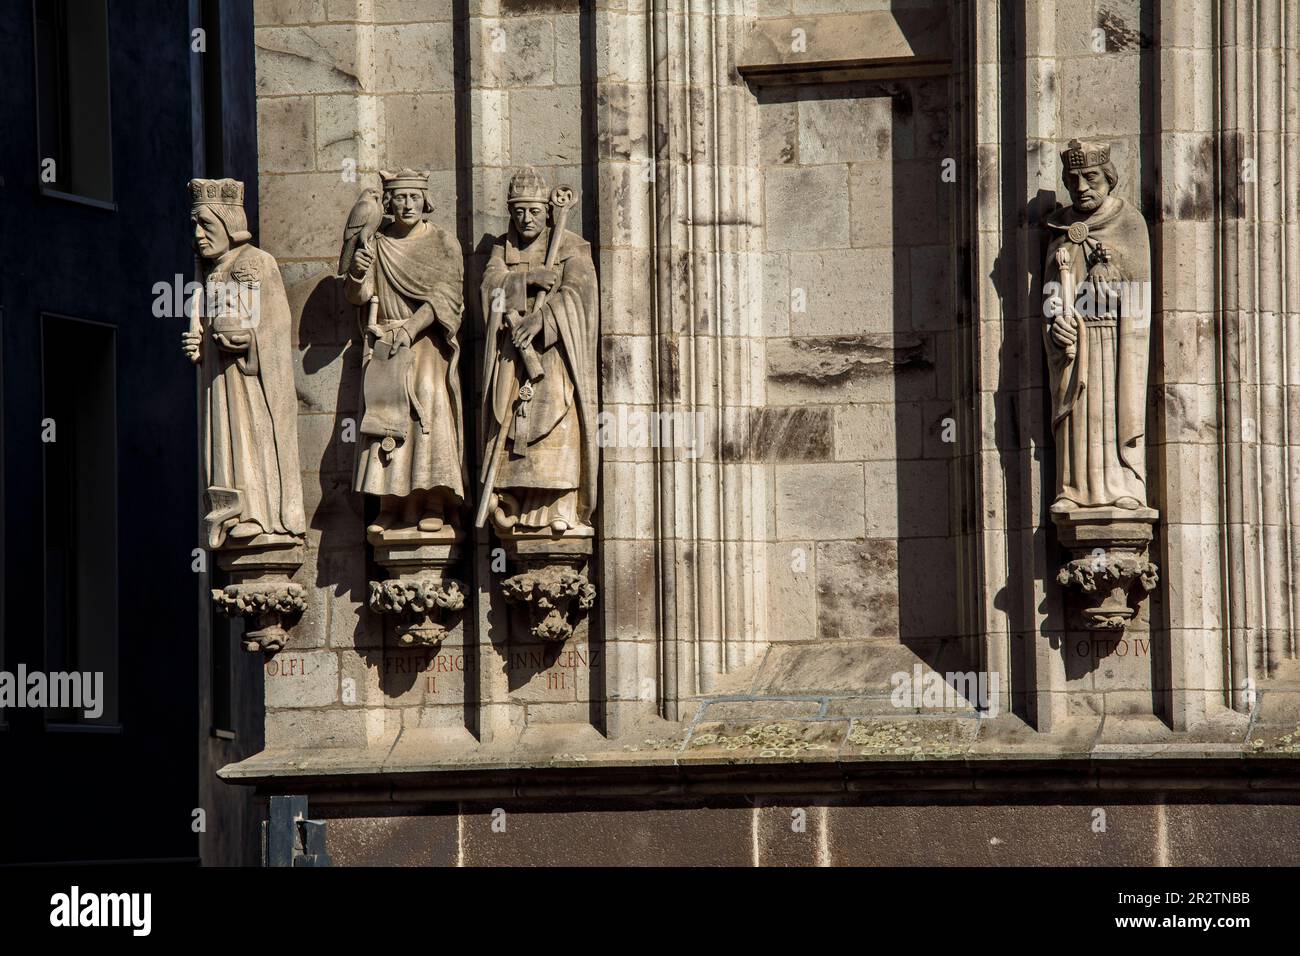 Statuen wichtiger Persönlichkeiten am Turm des historischen Rathauses in der Kölner Altstadt. Statuen bedeutender Persoen Stockfoto